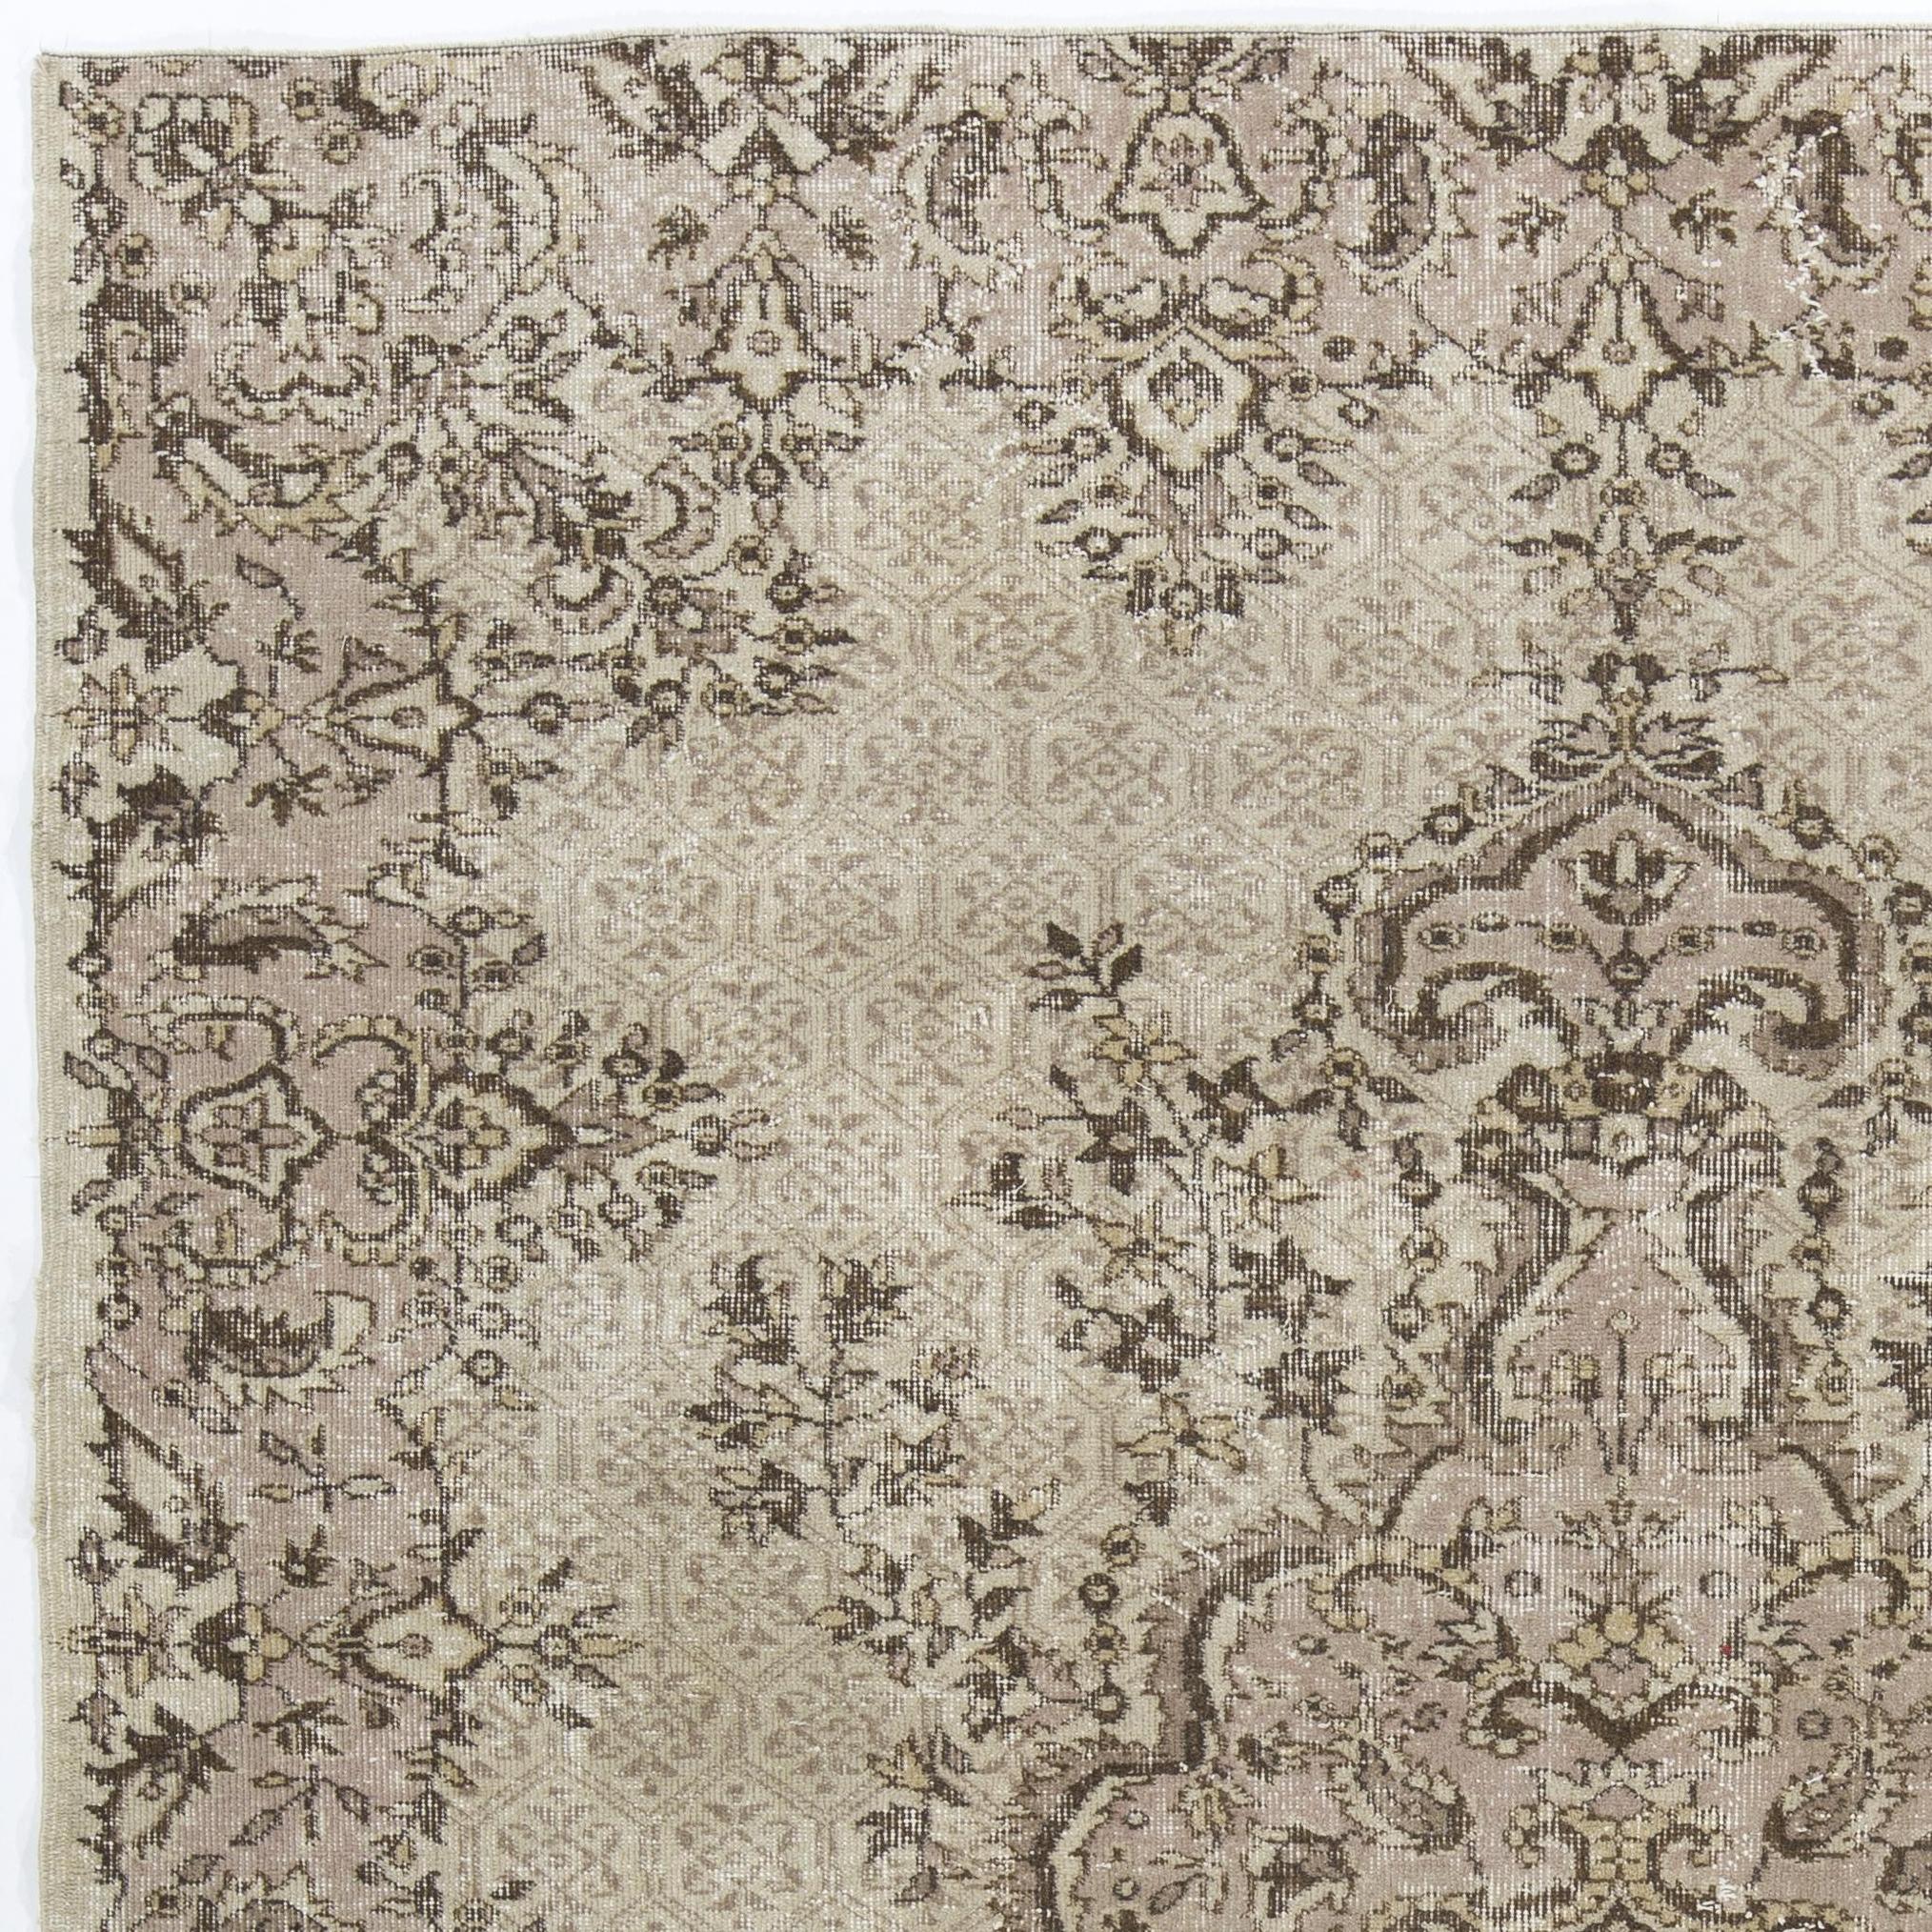 Ein fein handgeknüpfter türkischer Teppich aus den 1950er Jahren mit einem eleganten Medaillonmuster. Der Teppich hat einen gleichmäßigen, niedrigen Wollflor auf Baumwollbasis. Es ist schwer und liegt flach auf dem Boden, in sehr gutem Zustand ohne